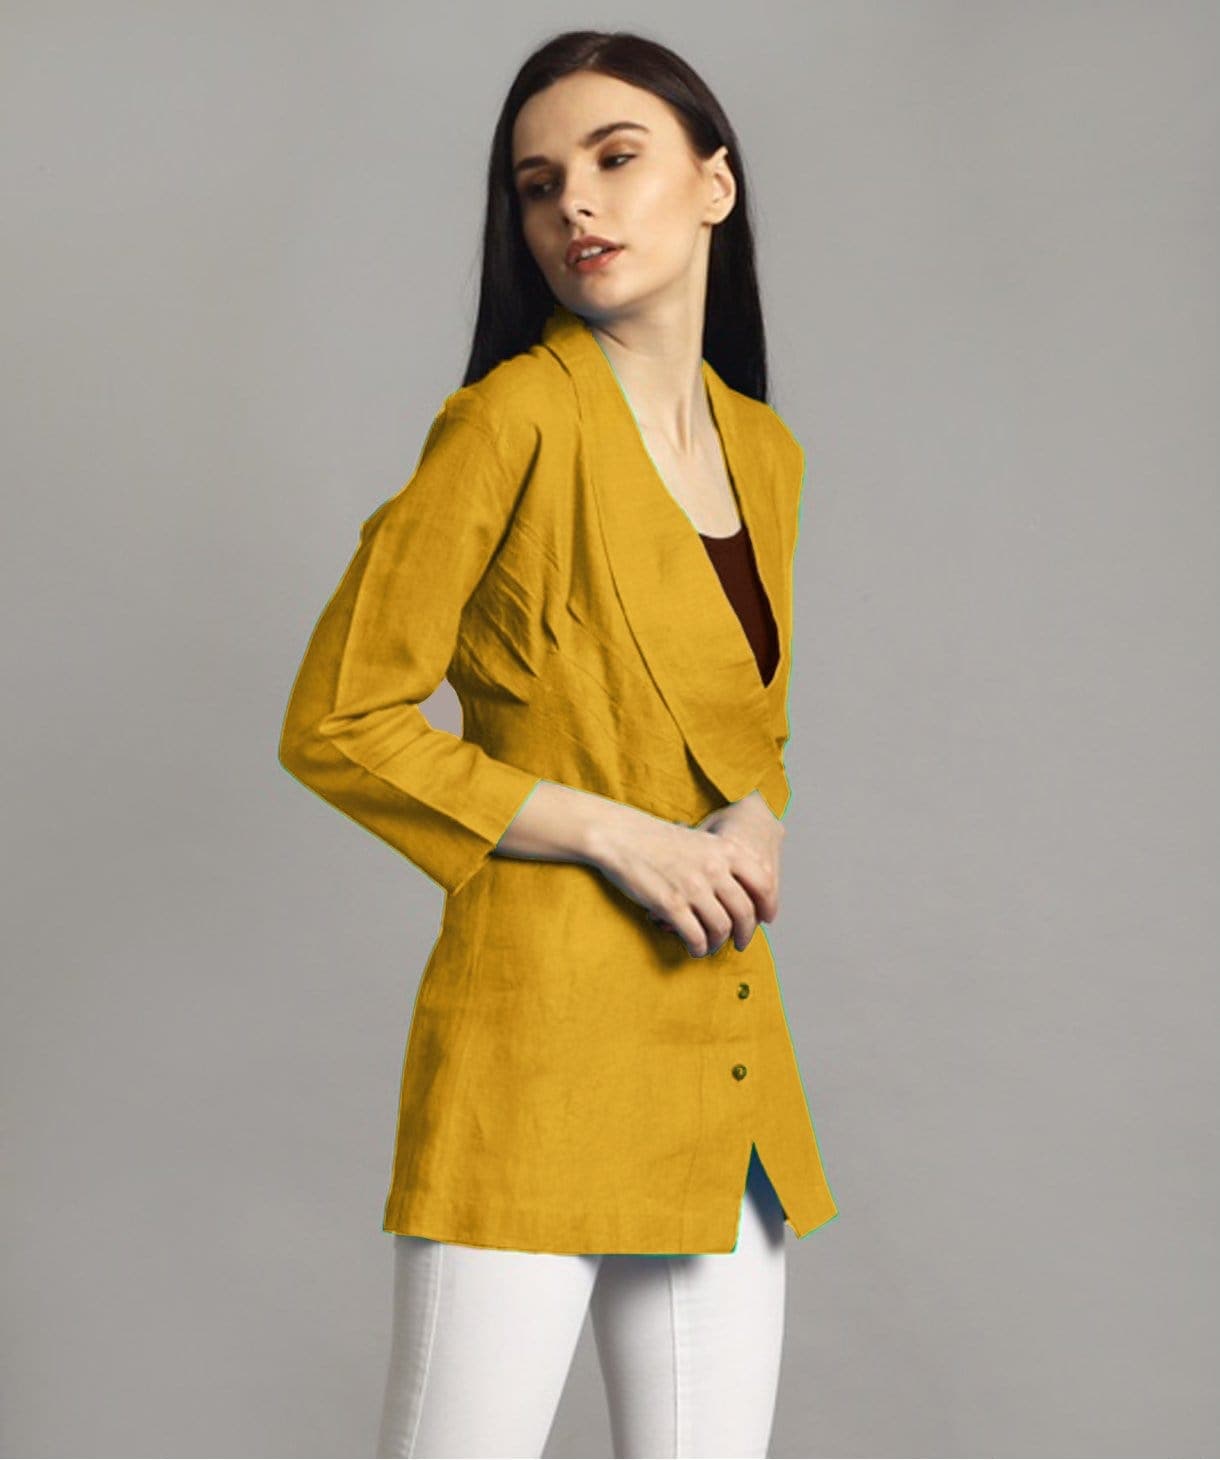 Mustard Linen Jacket Style Tunic - Uptownie